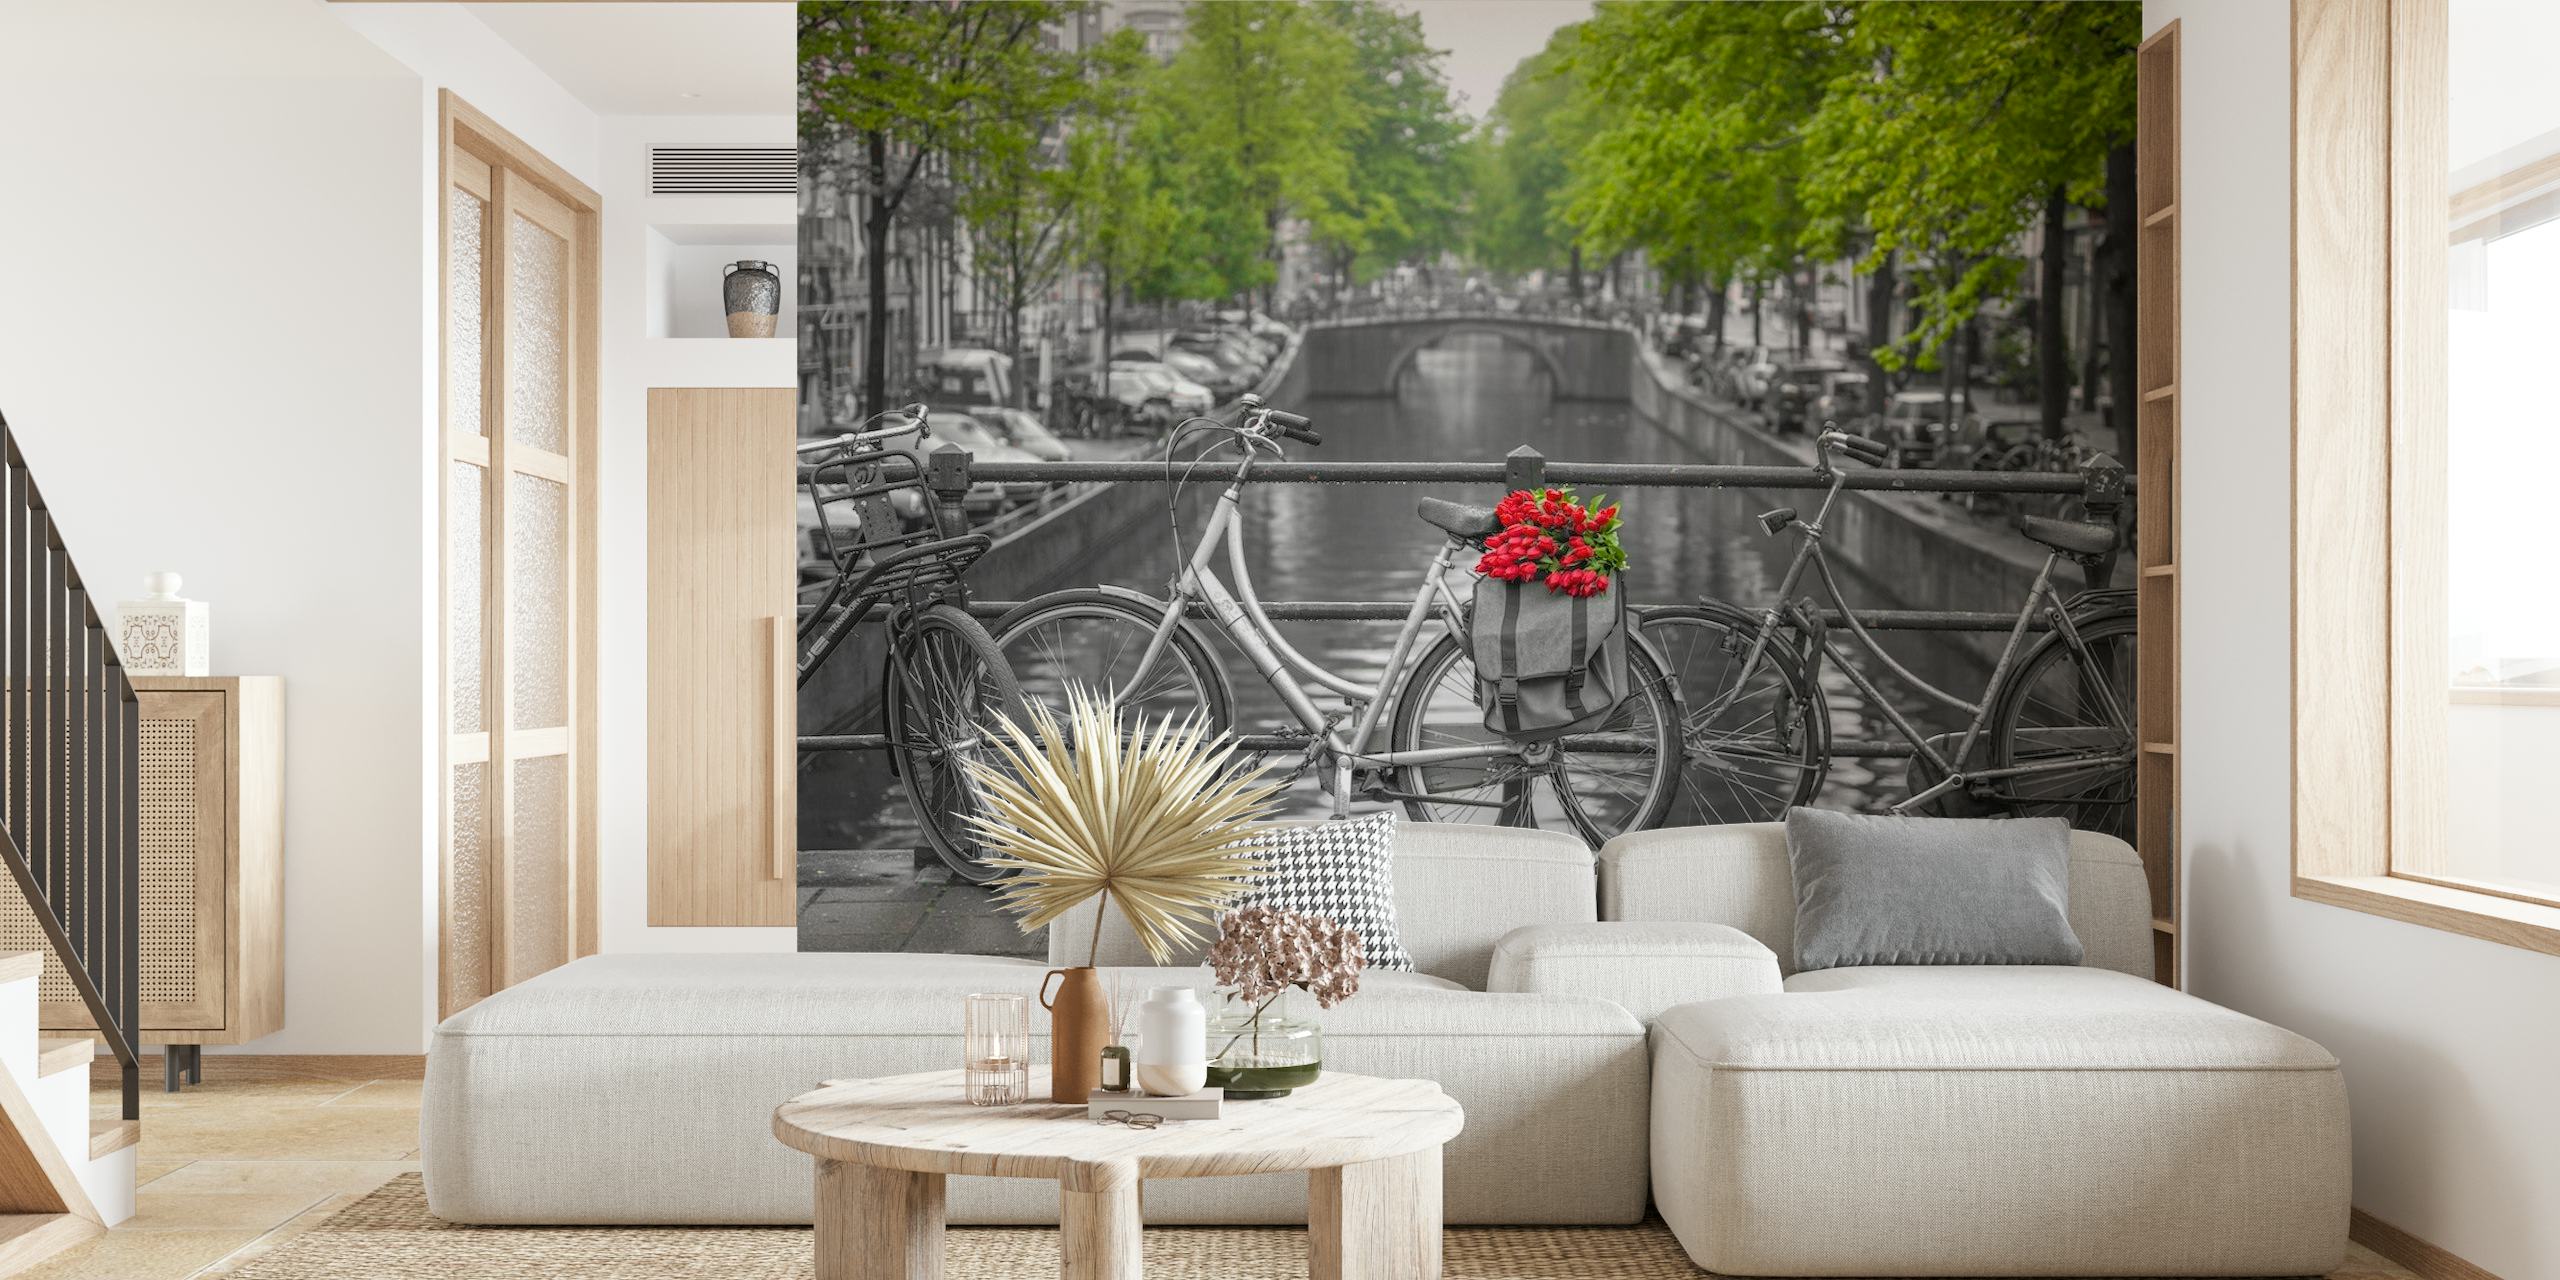 Kanał Amsterdamski z rowerami i fototapetą z czerwonymi kwiatami